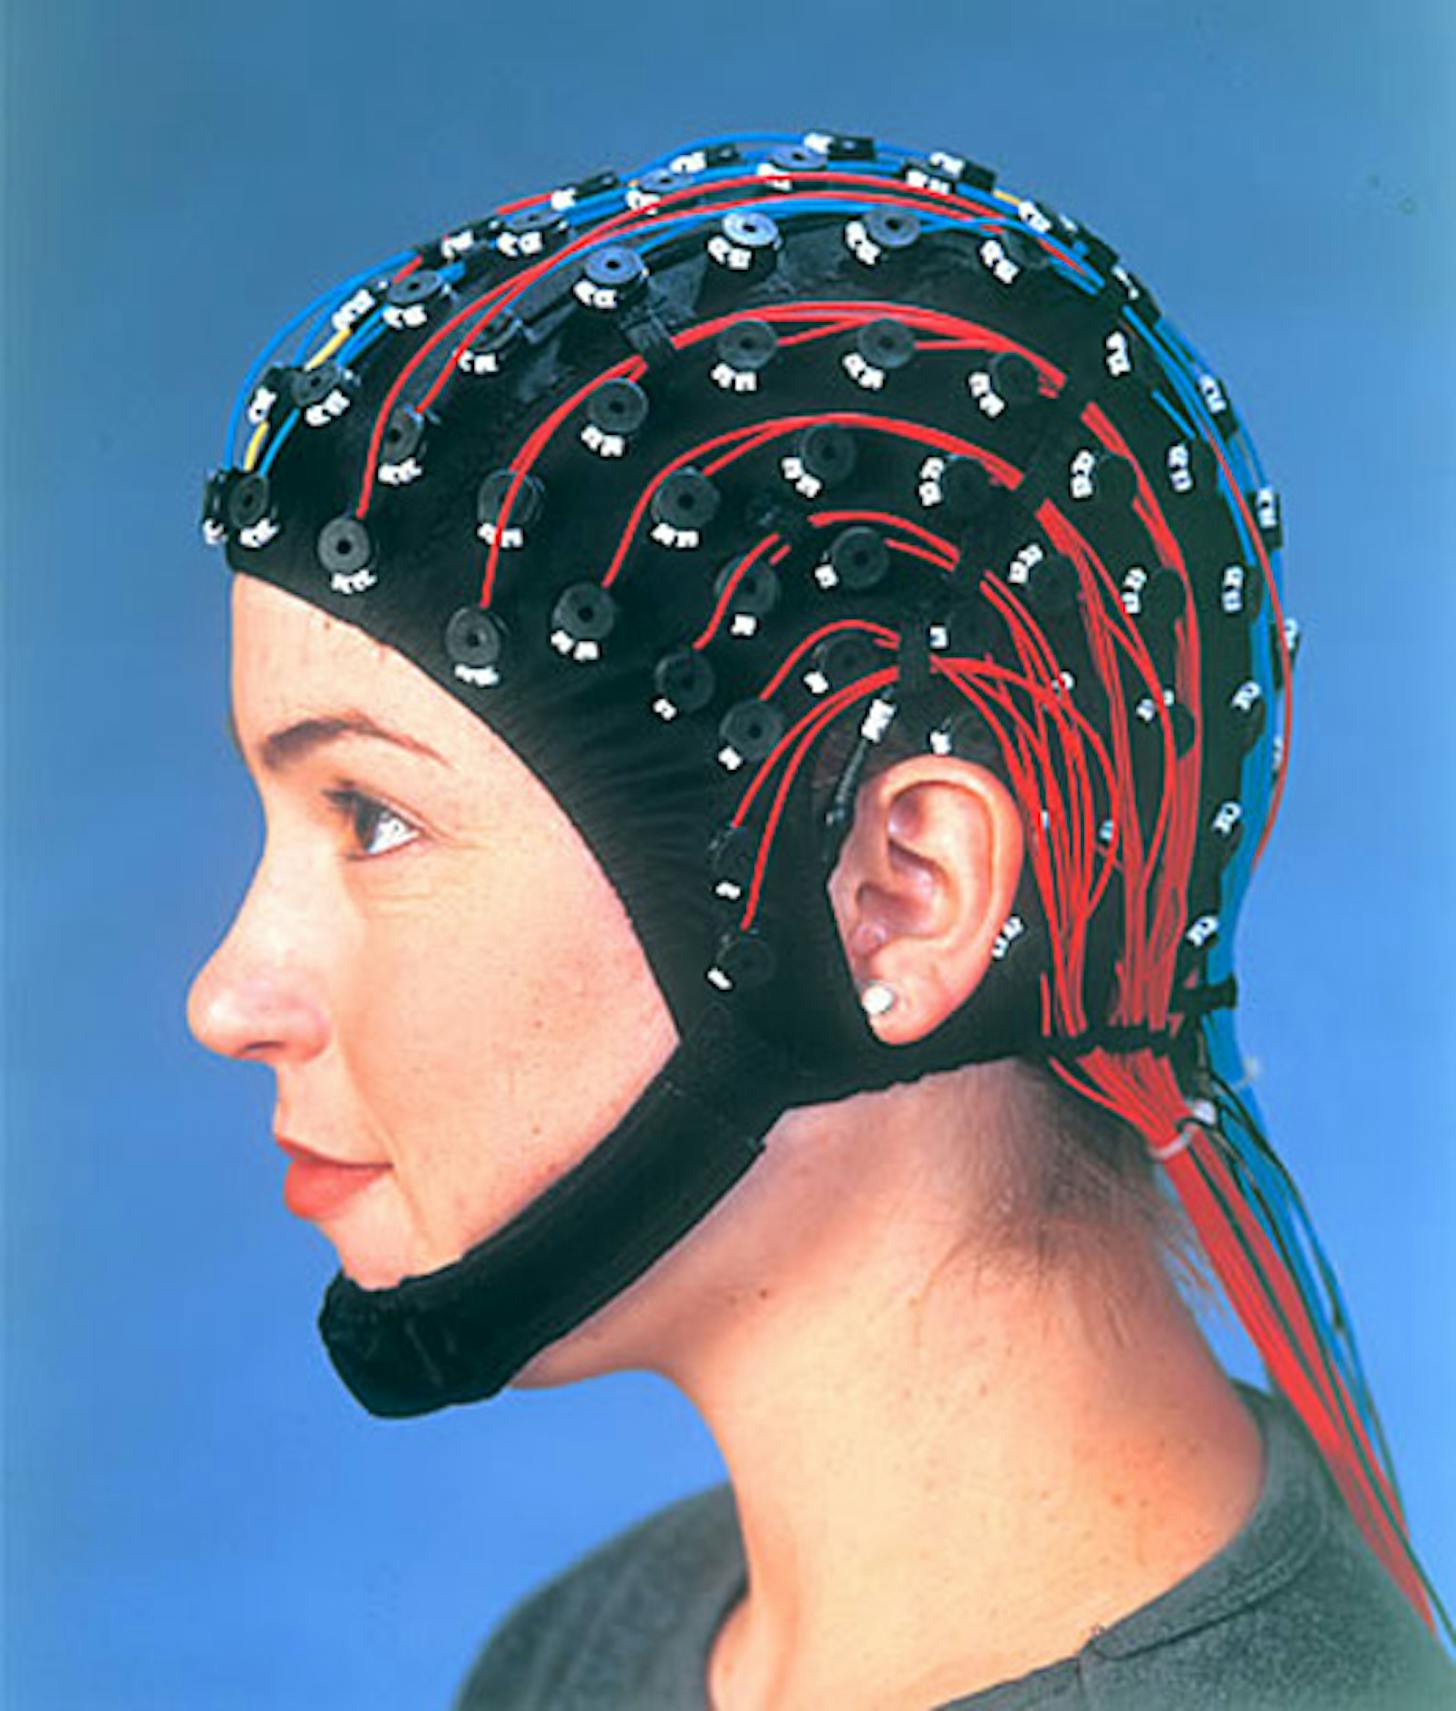 Шлем для ээг. Шлем для ЭЭГ Нейрософт. Электродная шапочка для ЭЭГ. Шапка для ЭЭГ Нейрософт. Шлем на голове.